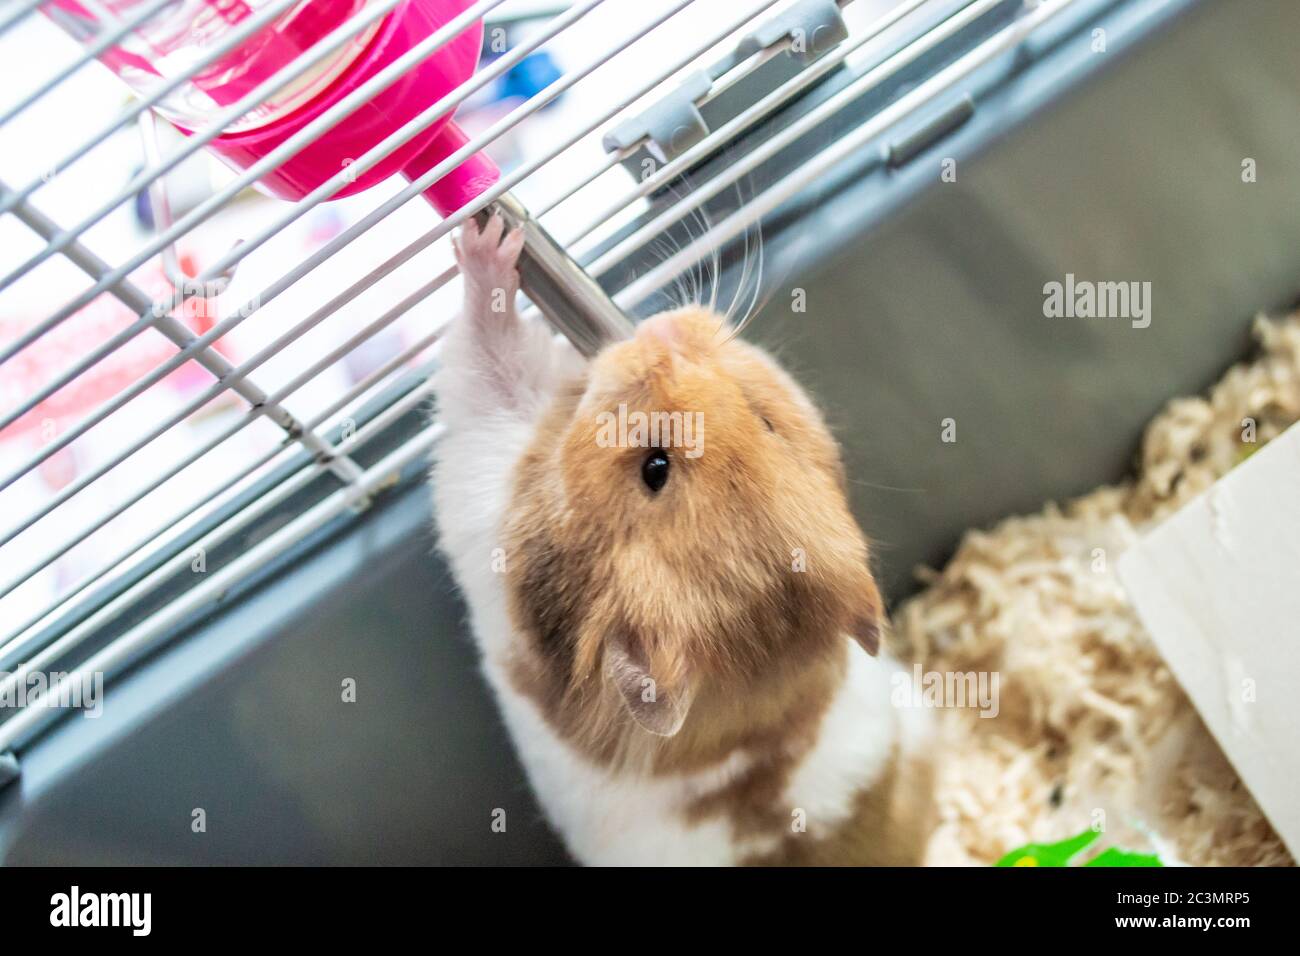 Syrischer Hamster aus Wasserflasche trinken Stockfotografie - Alamy